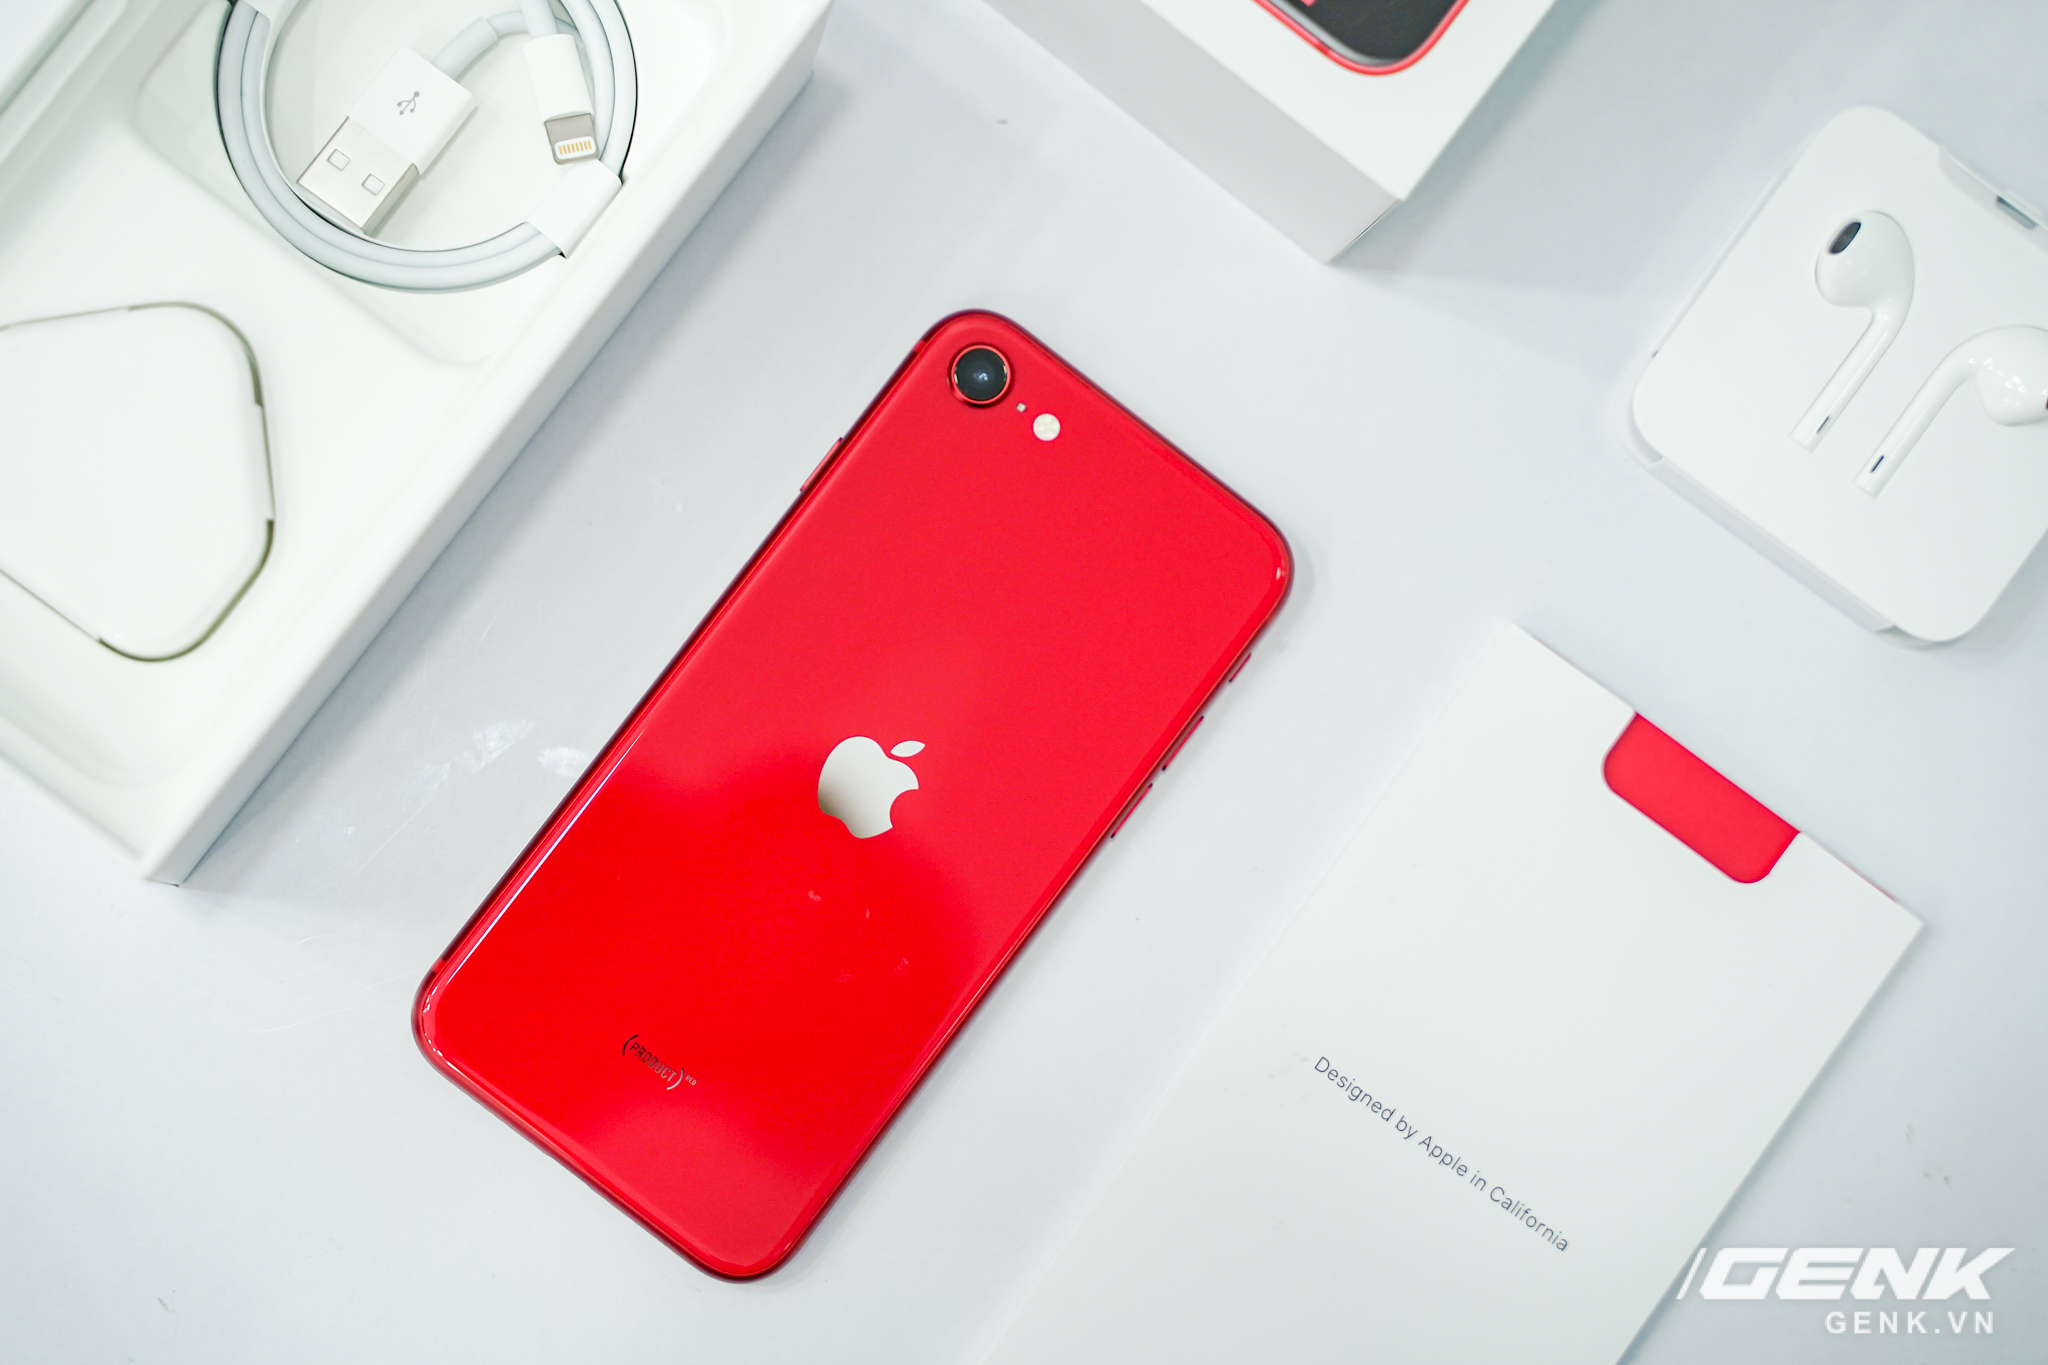 Cận cảnh iPhone SE 2020 đầu tiên tại Việt Nam: Thiết kế giống iPhone 8, giá  từ 12.7 triệu đồng